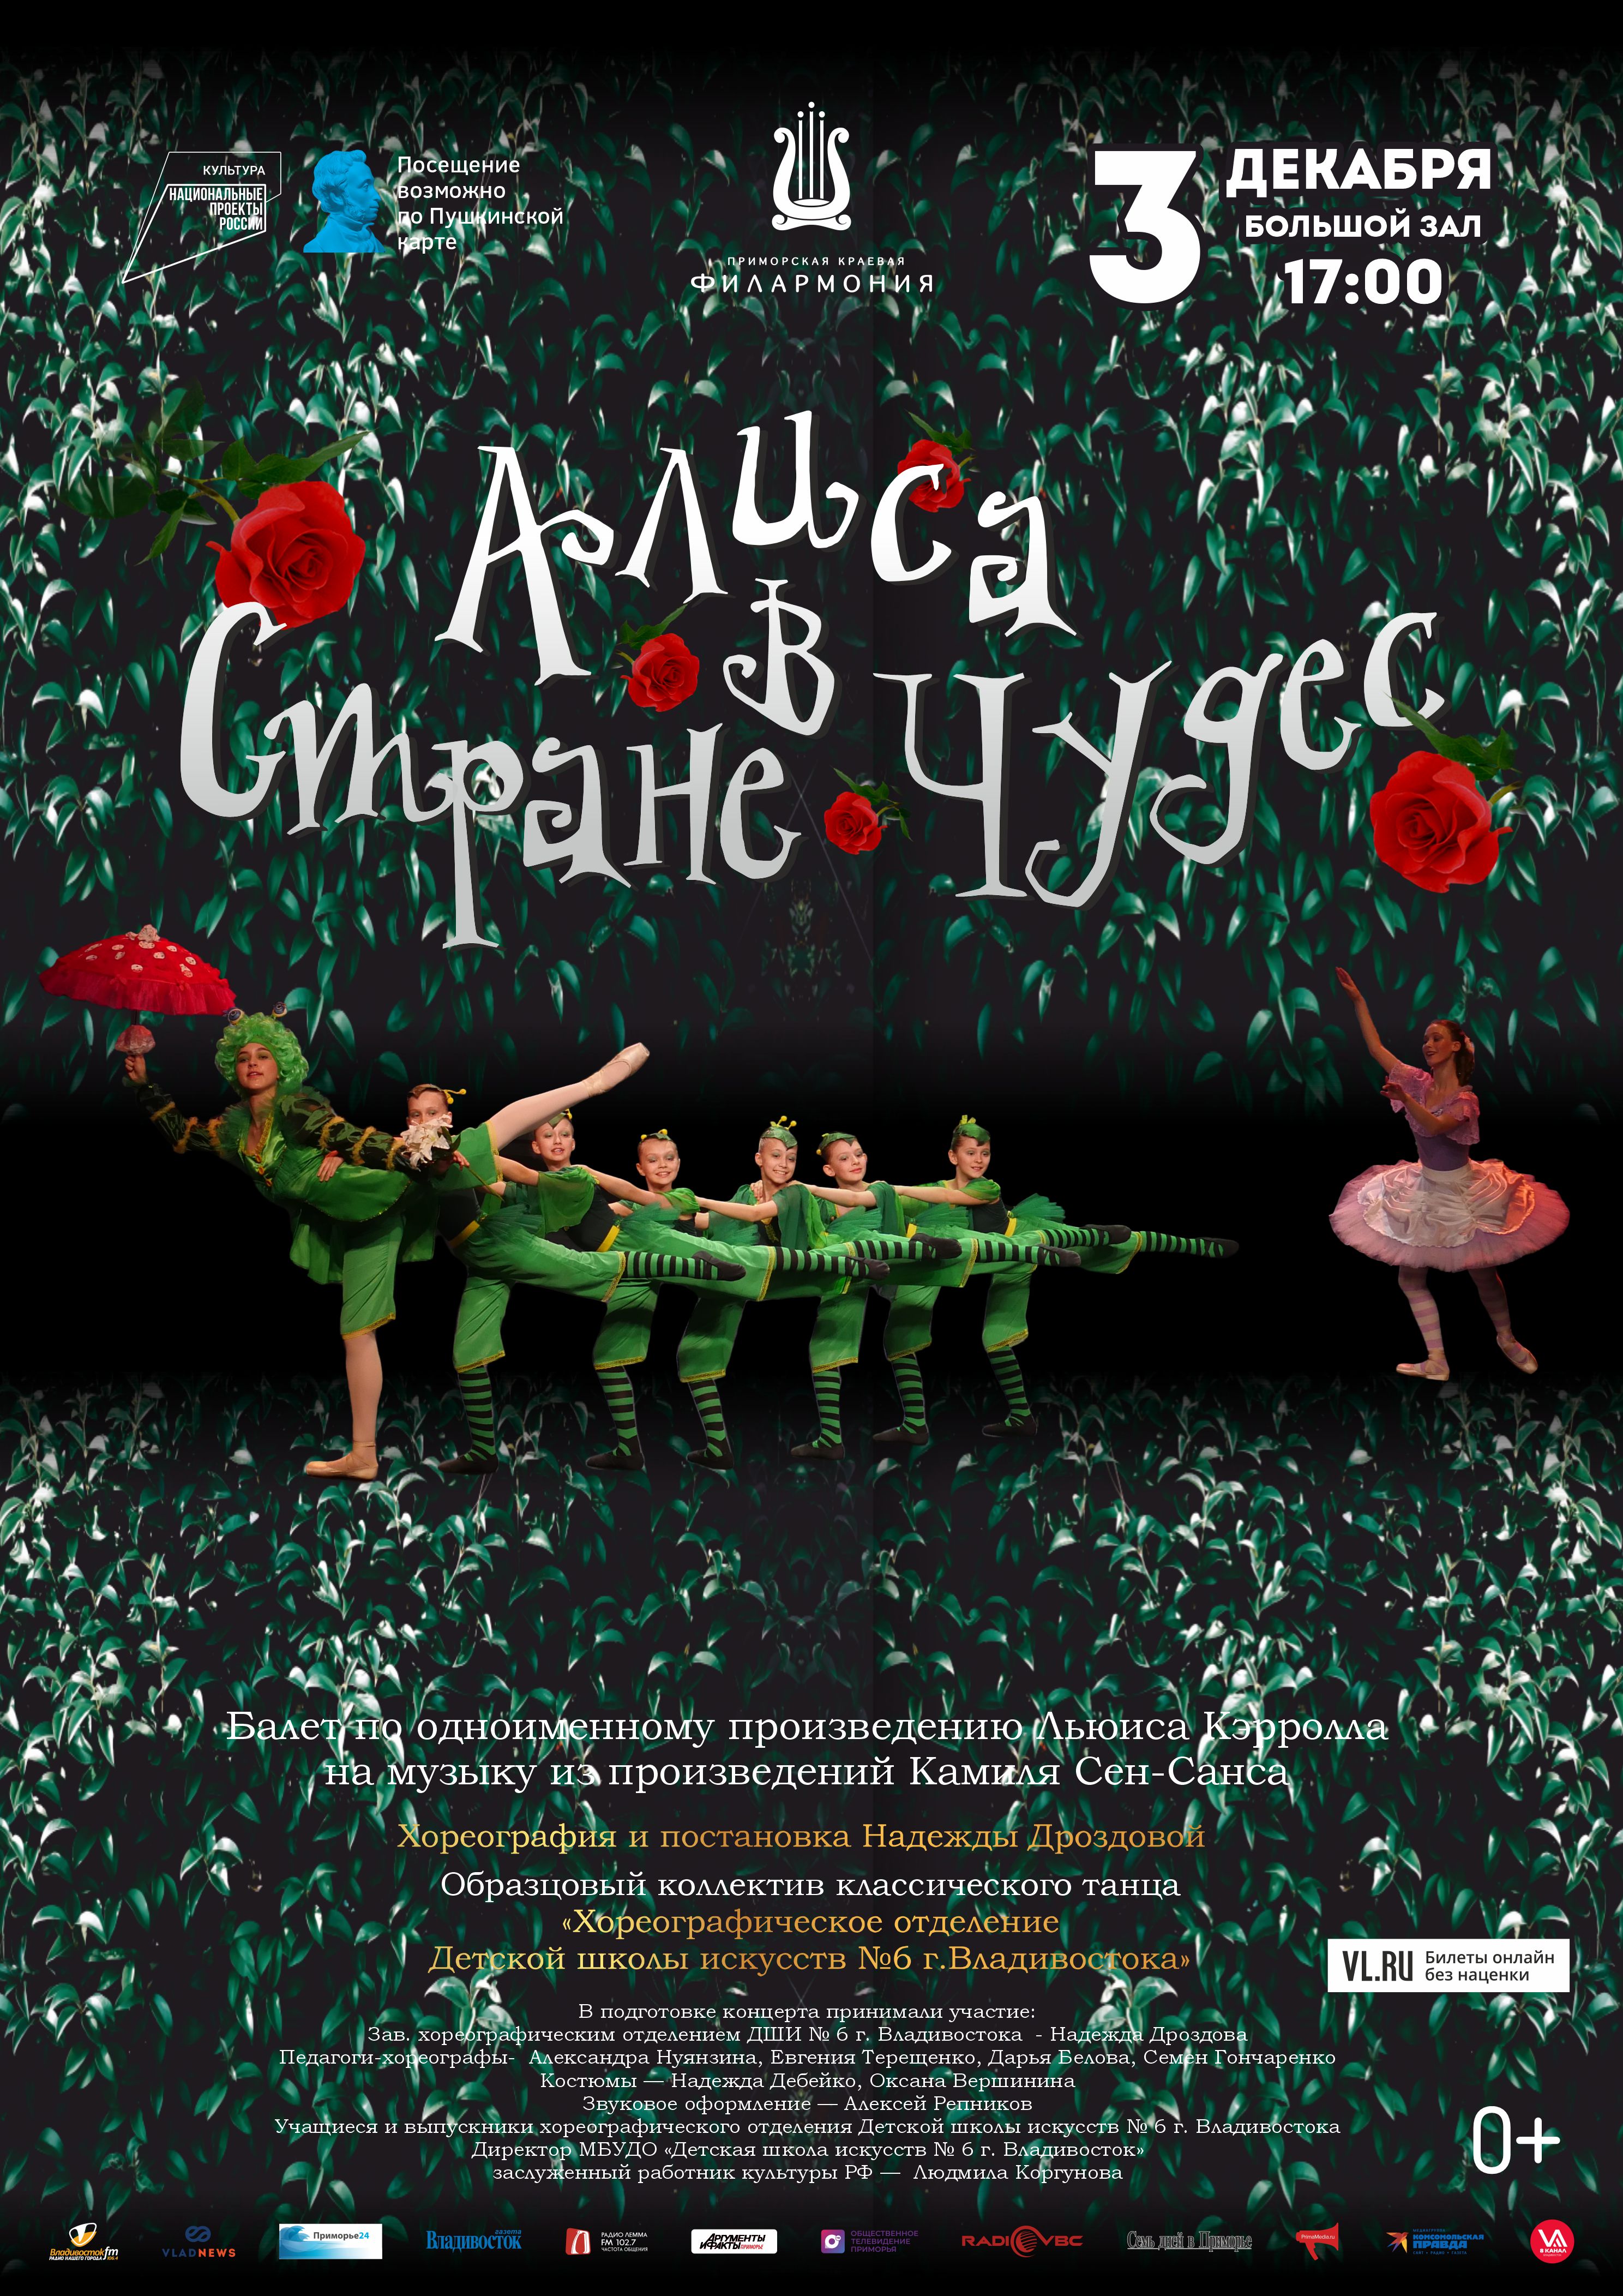 3 декабря Балет по одноименной  сказке Льюиса Кэрролла на музыку из произведений Камиля Сен-Санса  «Алиса в стране Чудес»